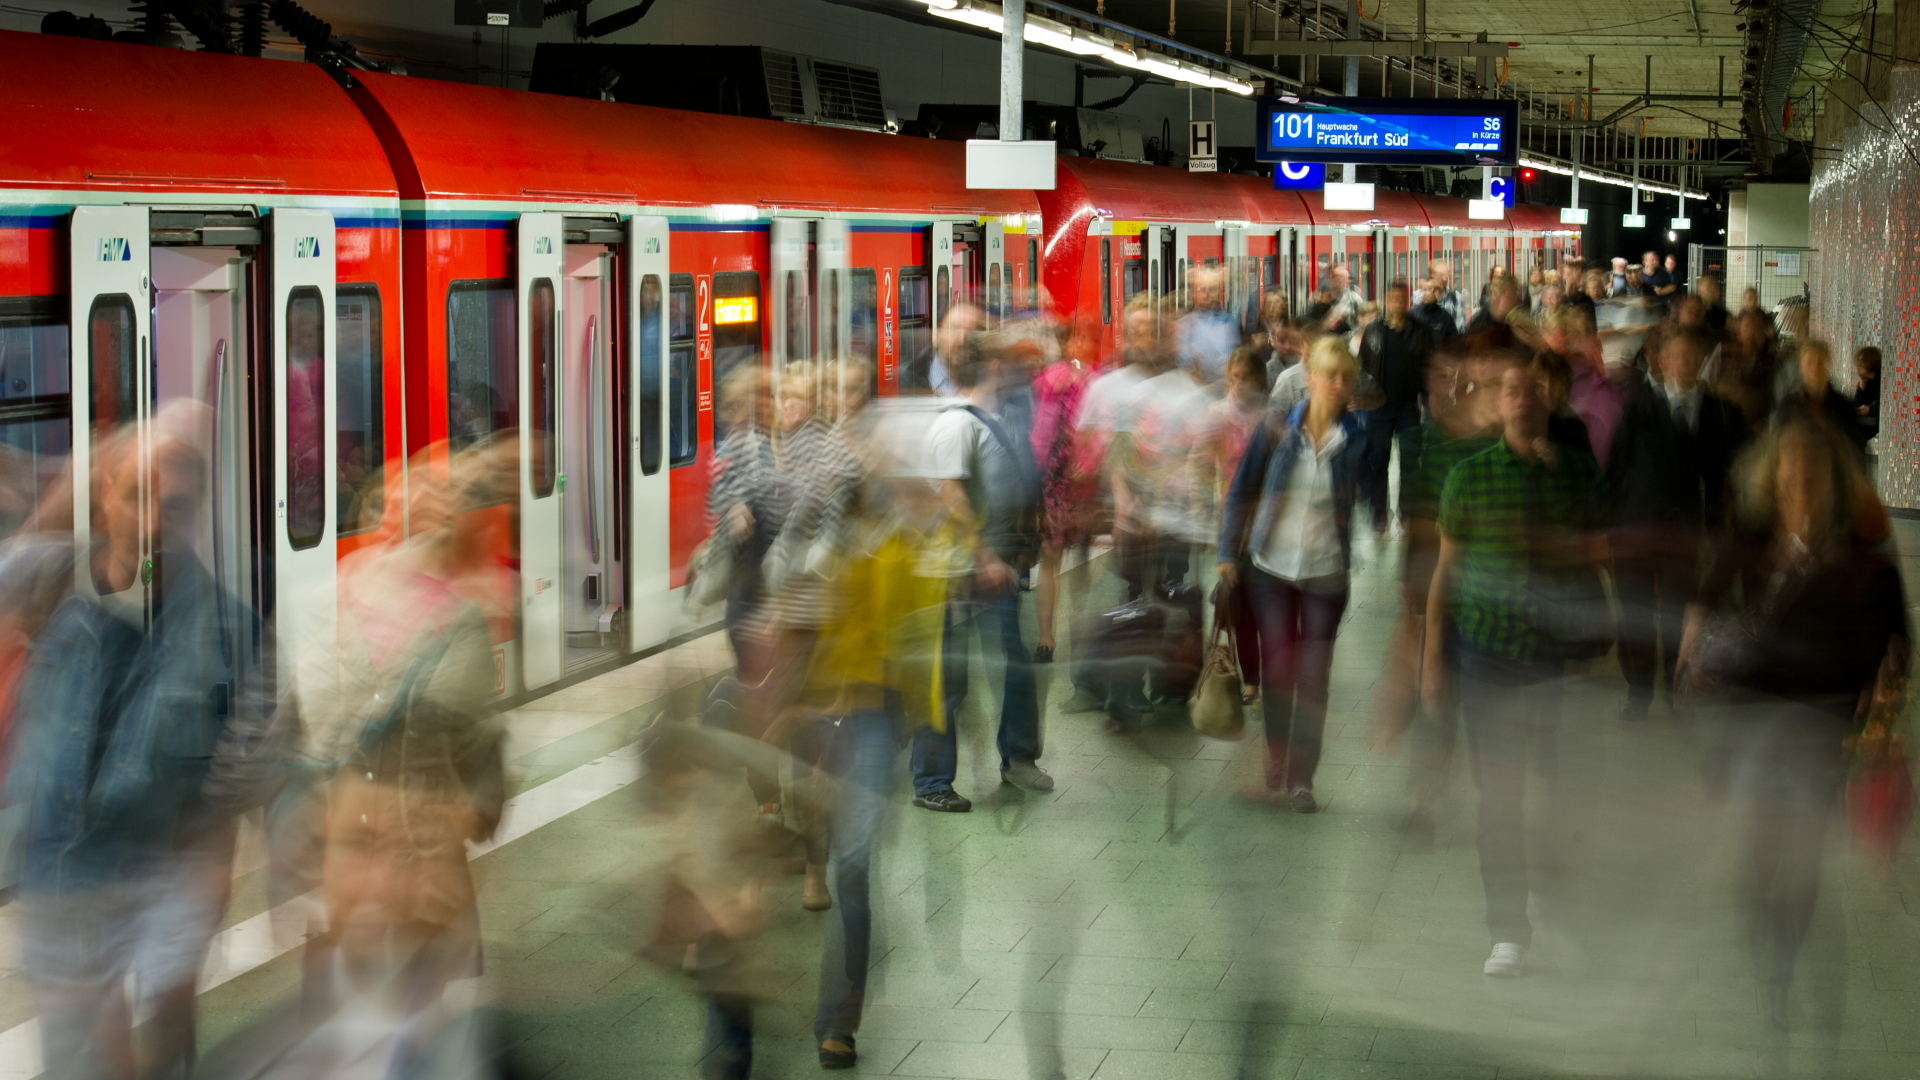  Viele Menschen verlassen eine gerade eingefahrene S-Bahn im unteren Teil des Hauptbahnhofs.